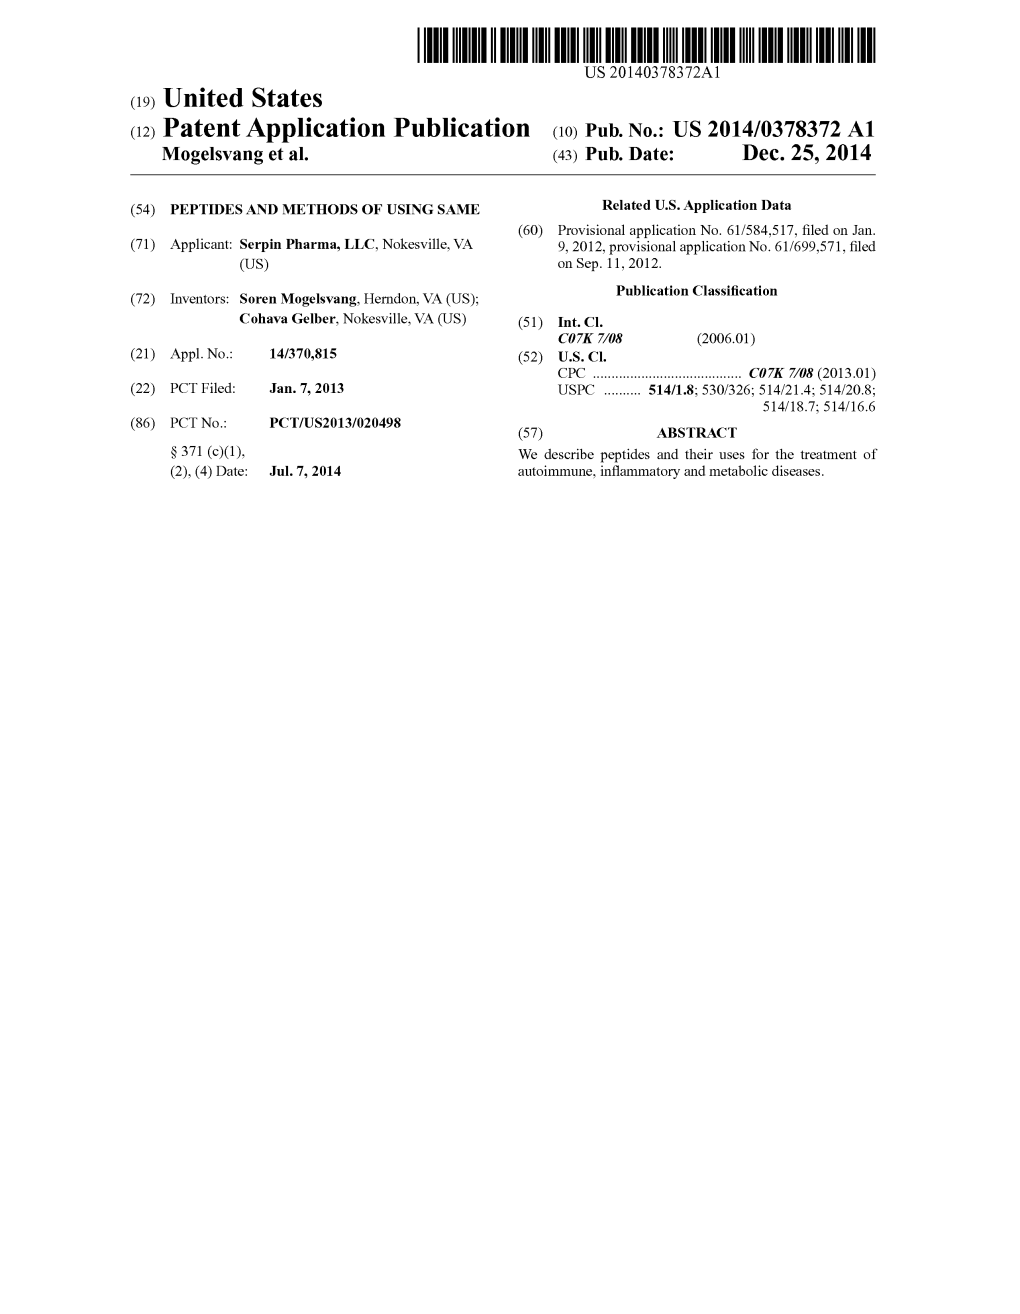 (12) Patent Application Publication (10) Pub. No.: US 2014/0378372 A1 Mogelsvang Et Al